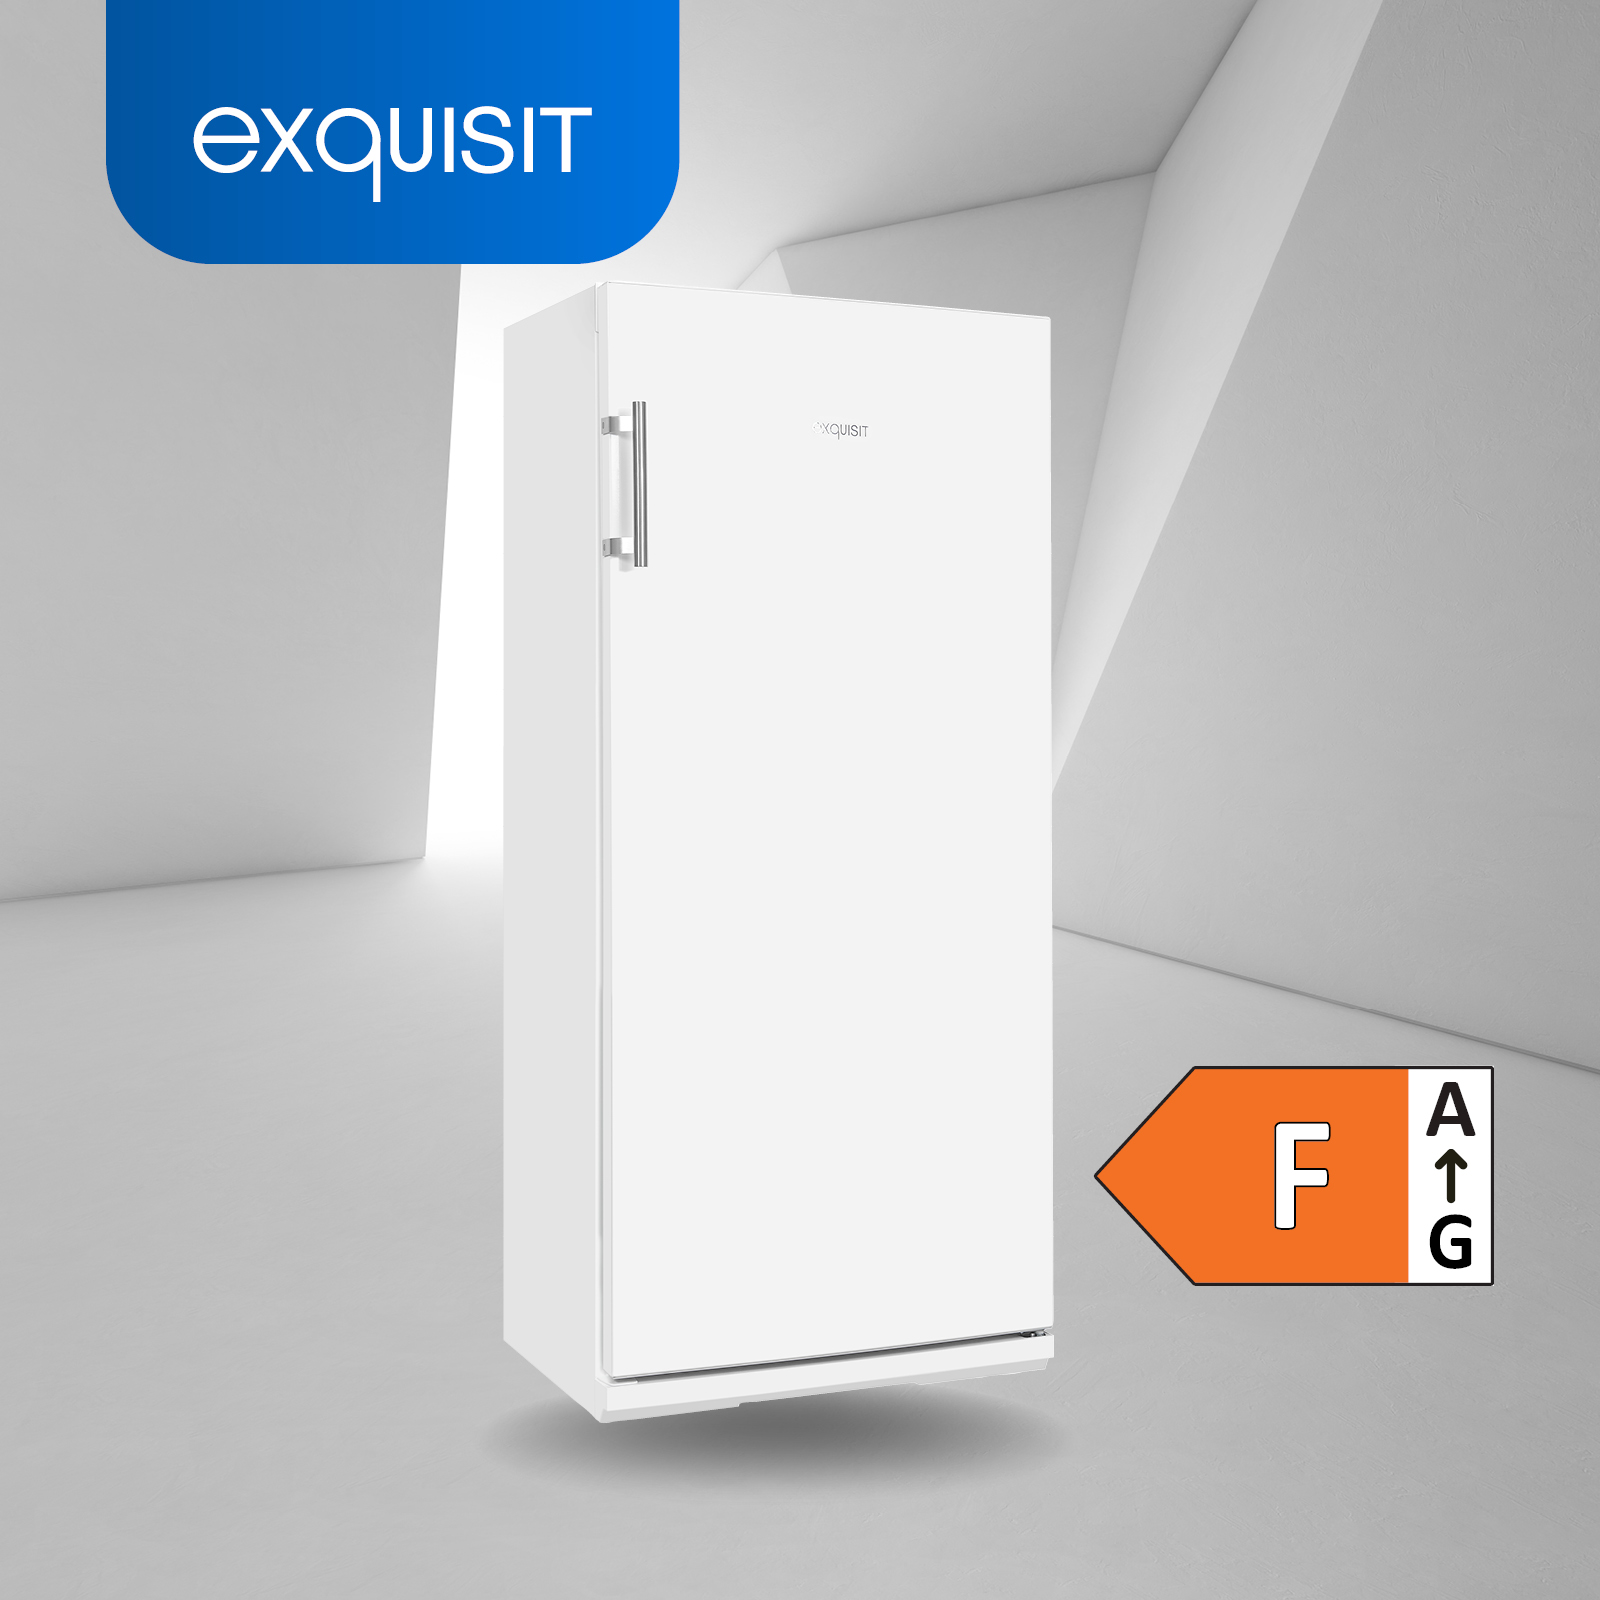 EXQUISIT KS29-V-H-280F 1450 kWh/Jahr, weiss F, mm (131,00 hoch, weiß) Kühlschrank